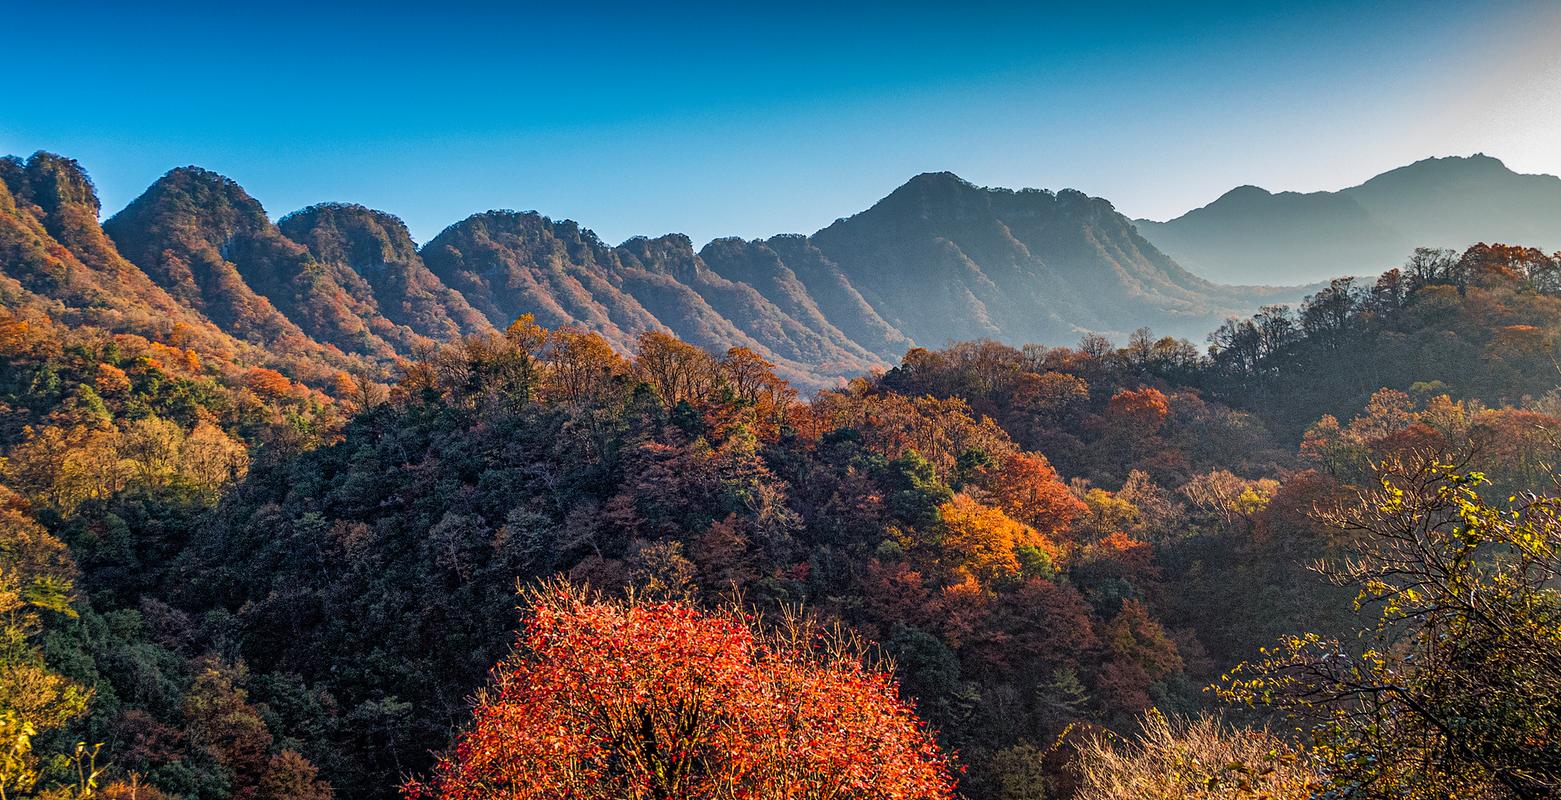 光雾山景区位于四川省巴中市南江县,用漫山遍野的红叶征服了世人.